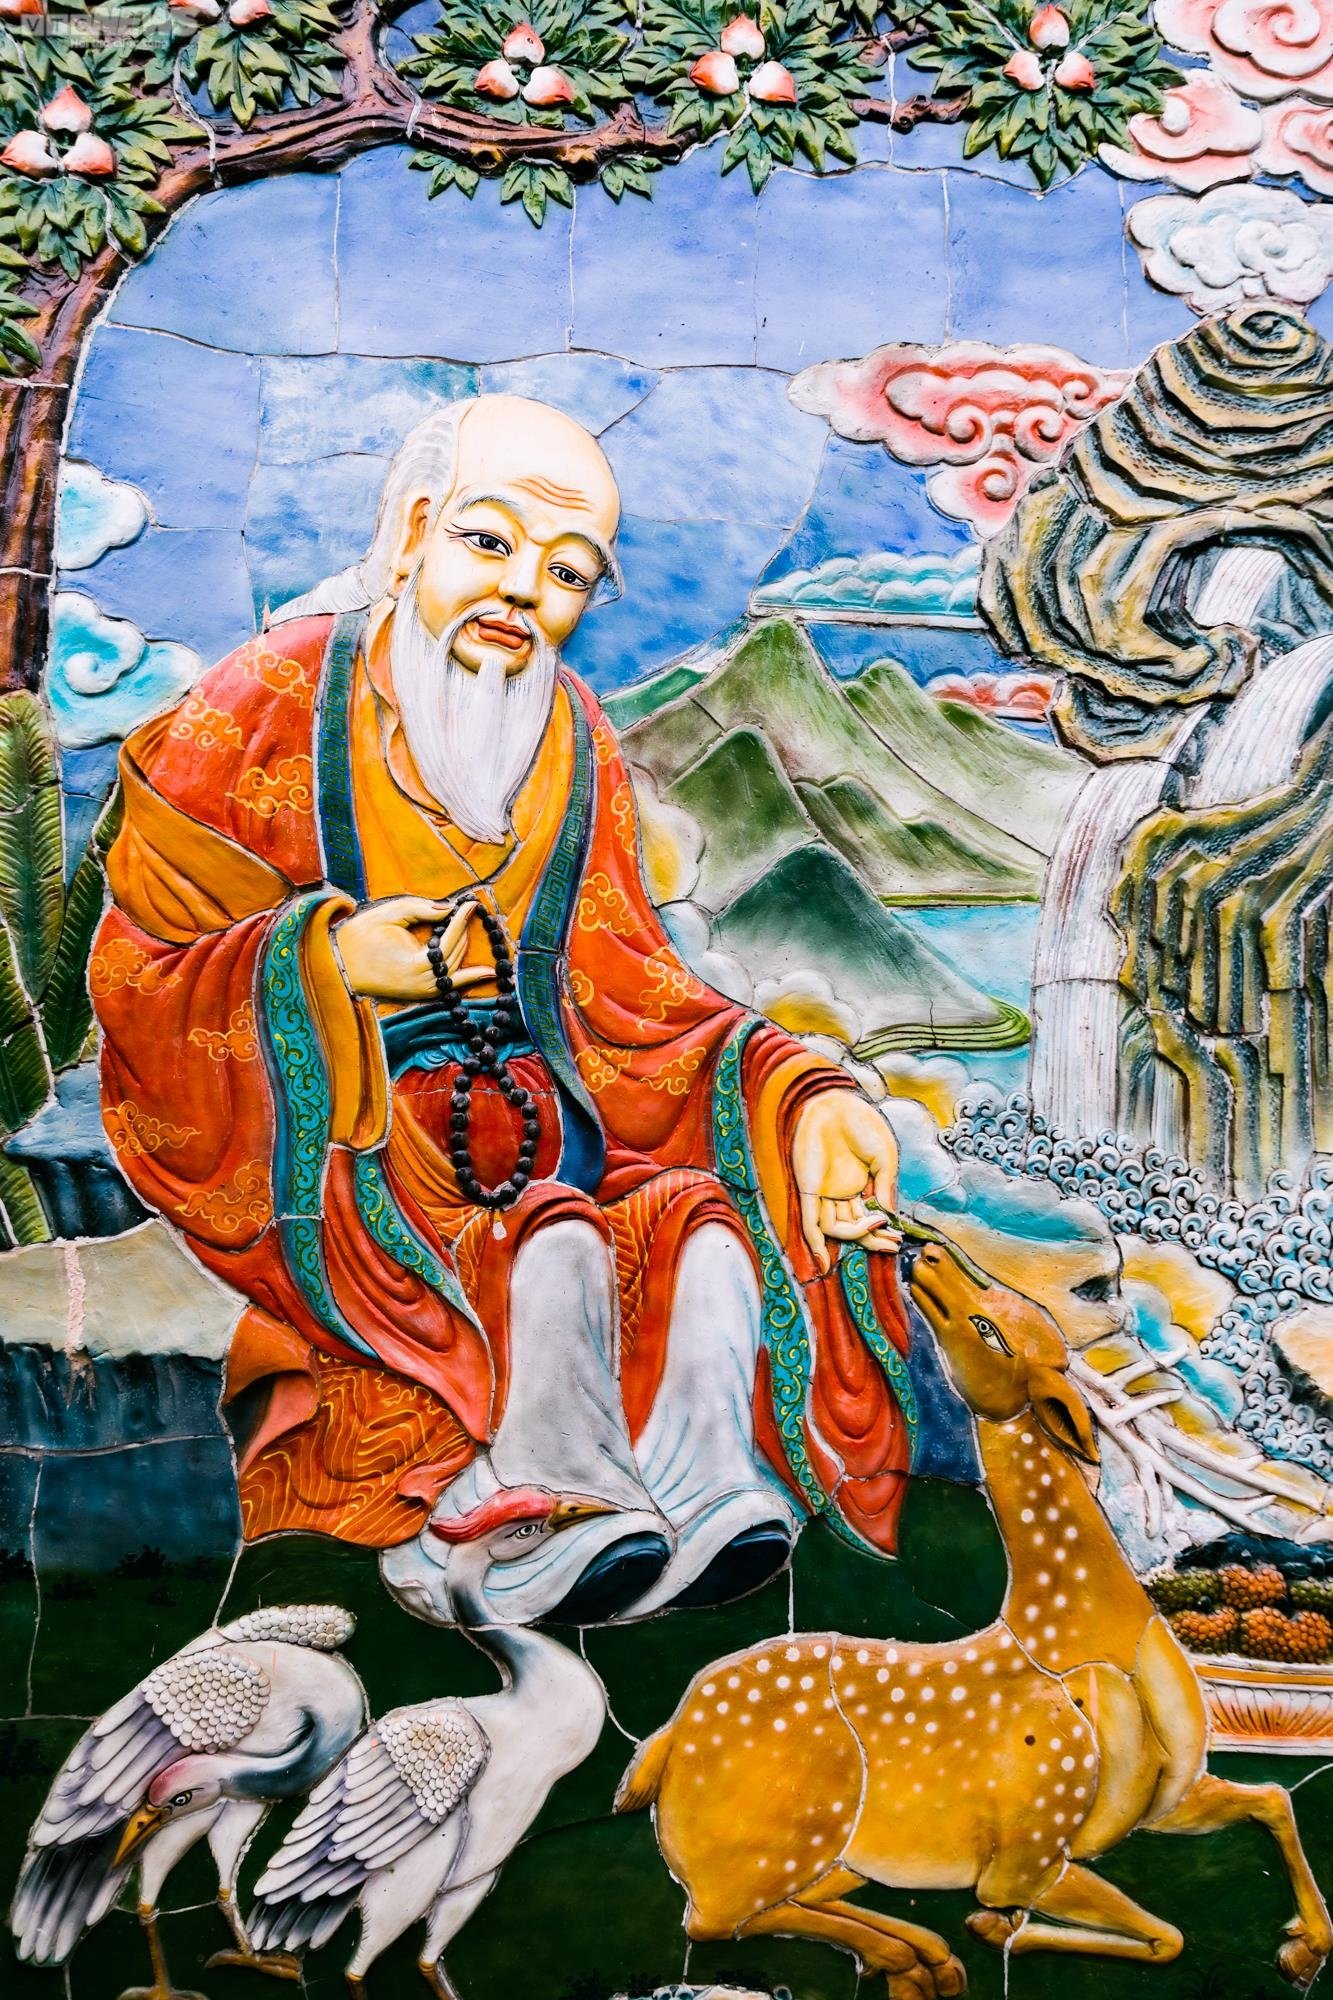 Chiêm ngưỡng ngôi chùa Tây Tạng 600 năm tuổi độc nhất tại Hà Nội - 17